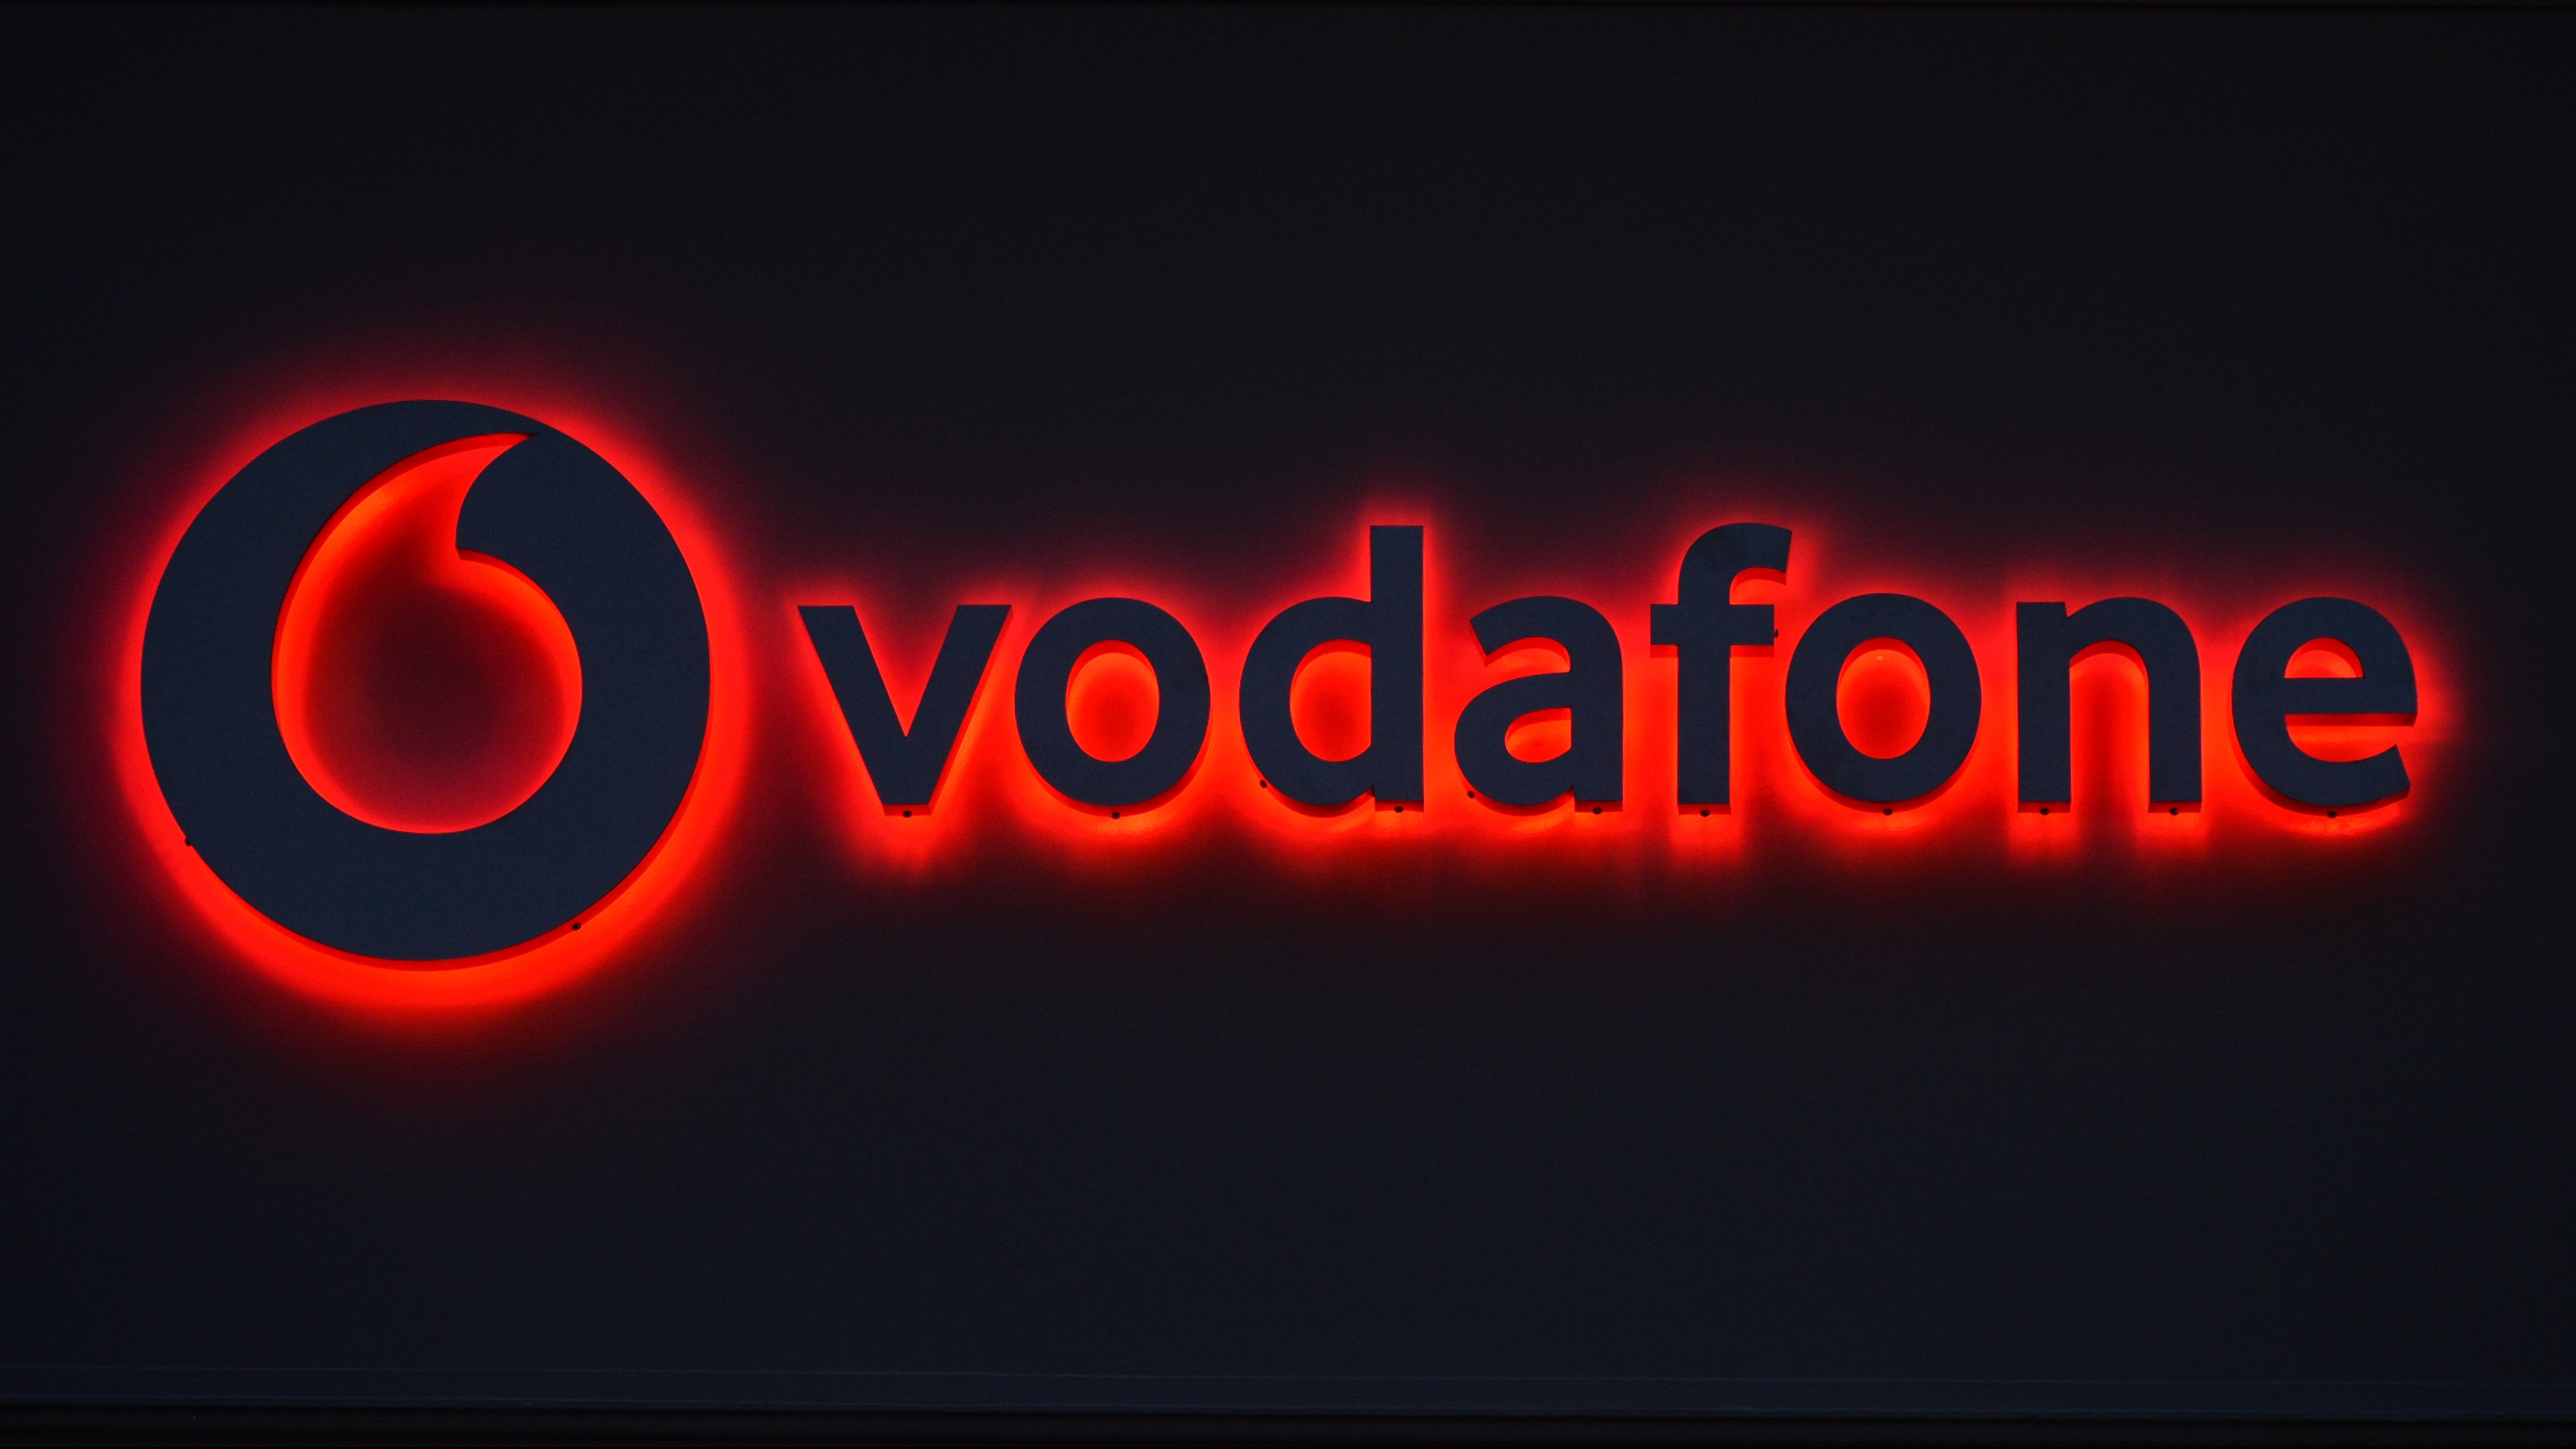 Karbantartás lesz a Vodafone-nál, több szolgáltatás sem fog működni